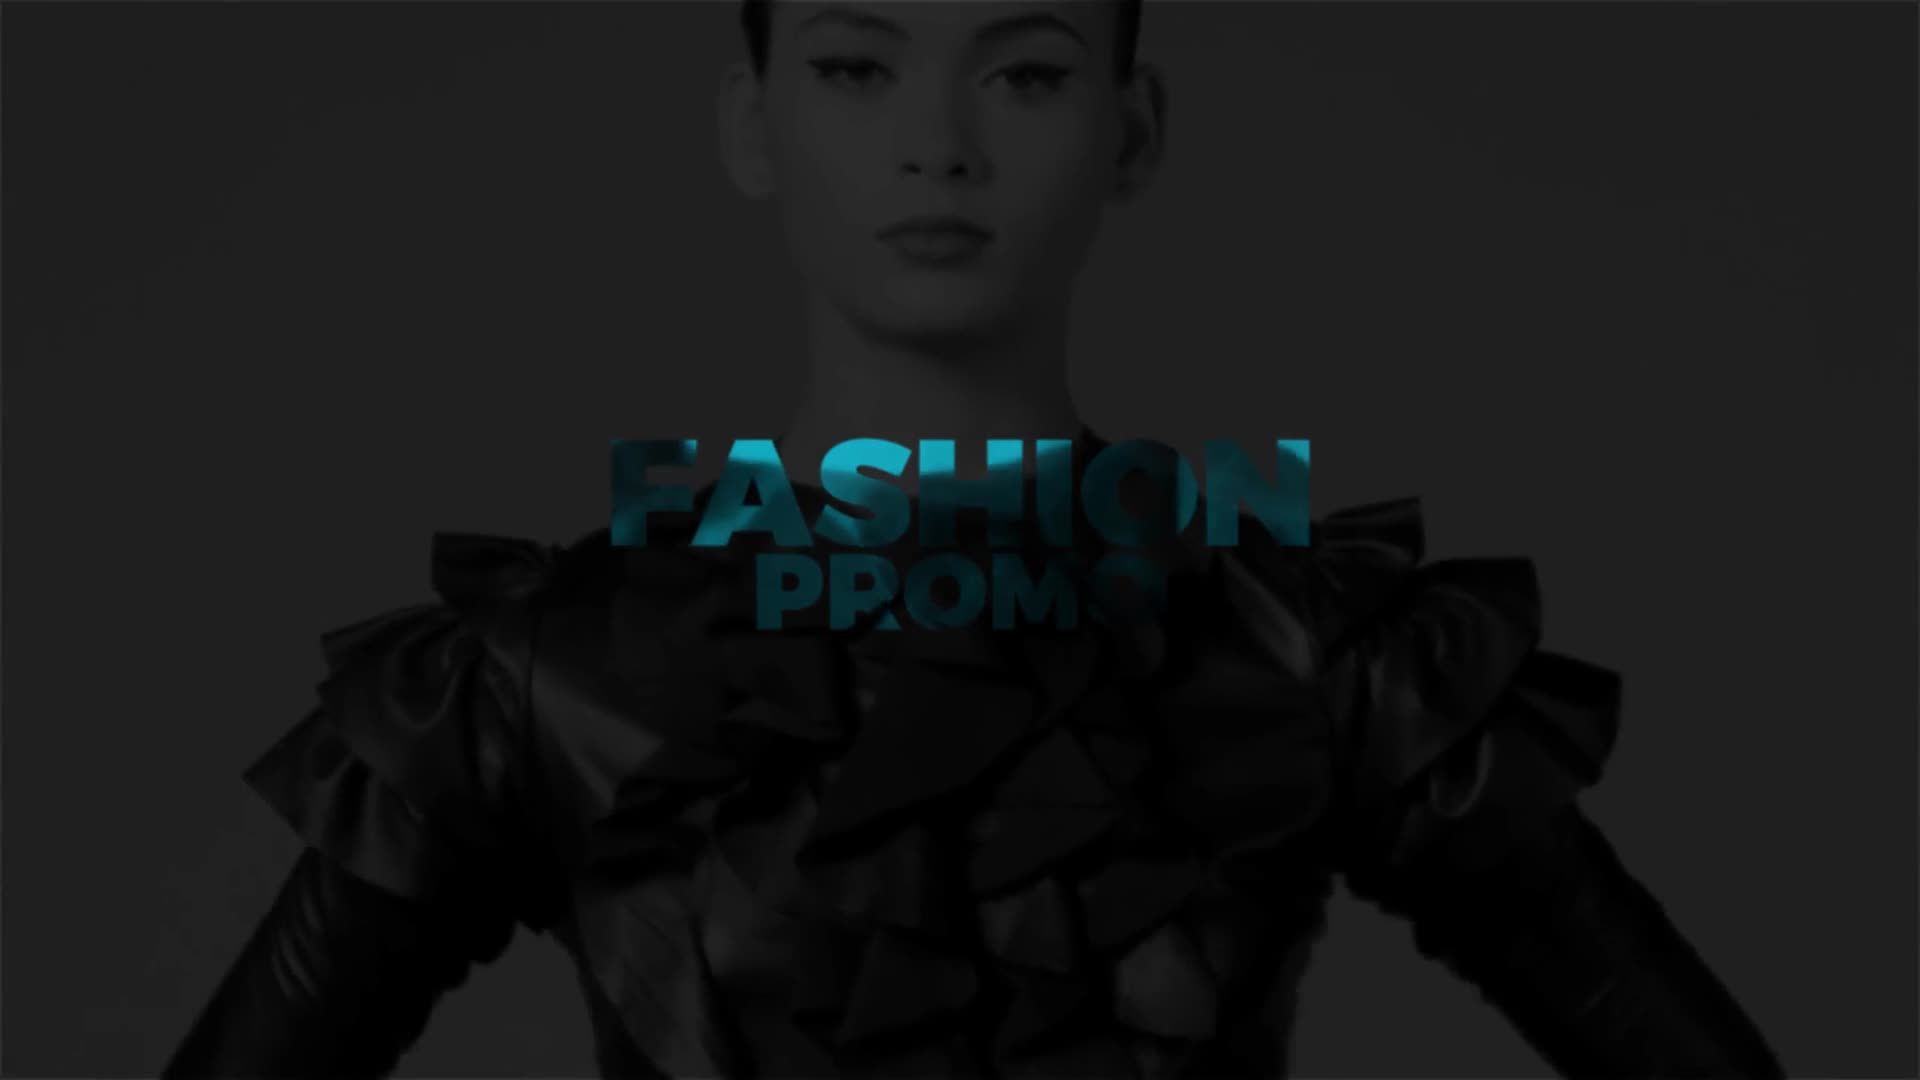 Fashion Promo - Download Videohive 20179978